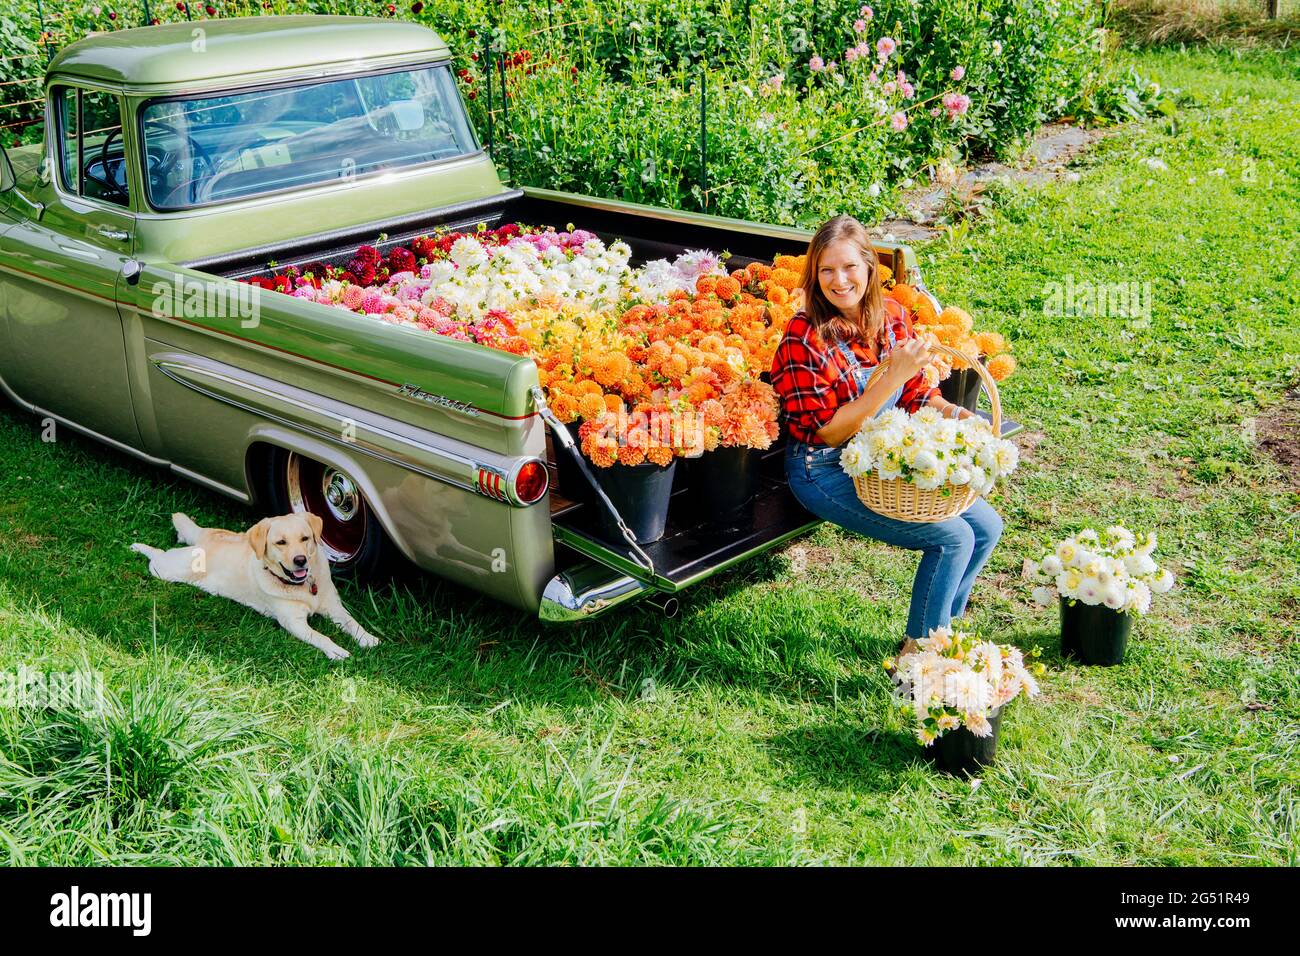 Cama de camión llena de flores Dahlia y mujer con cesta Foto de stock